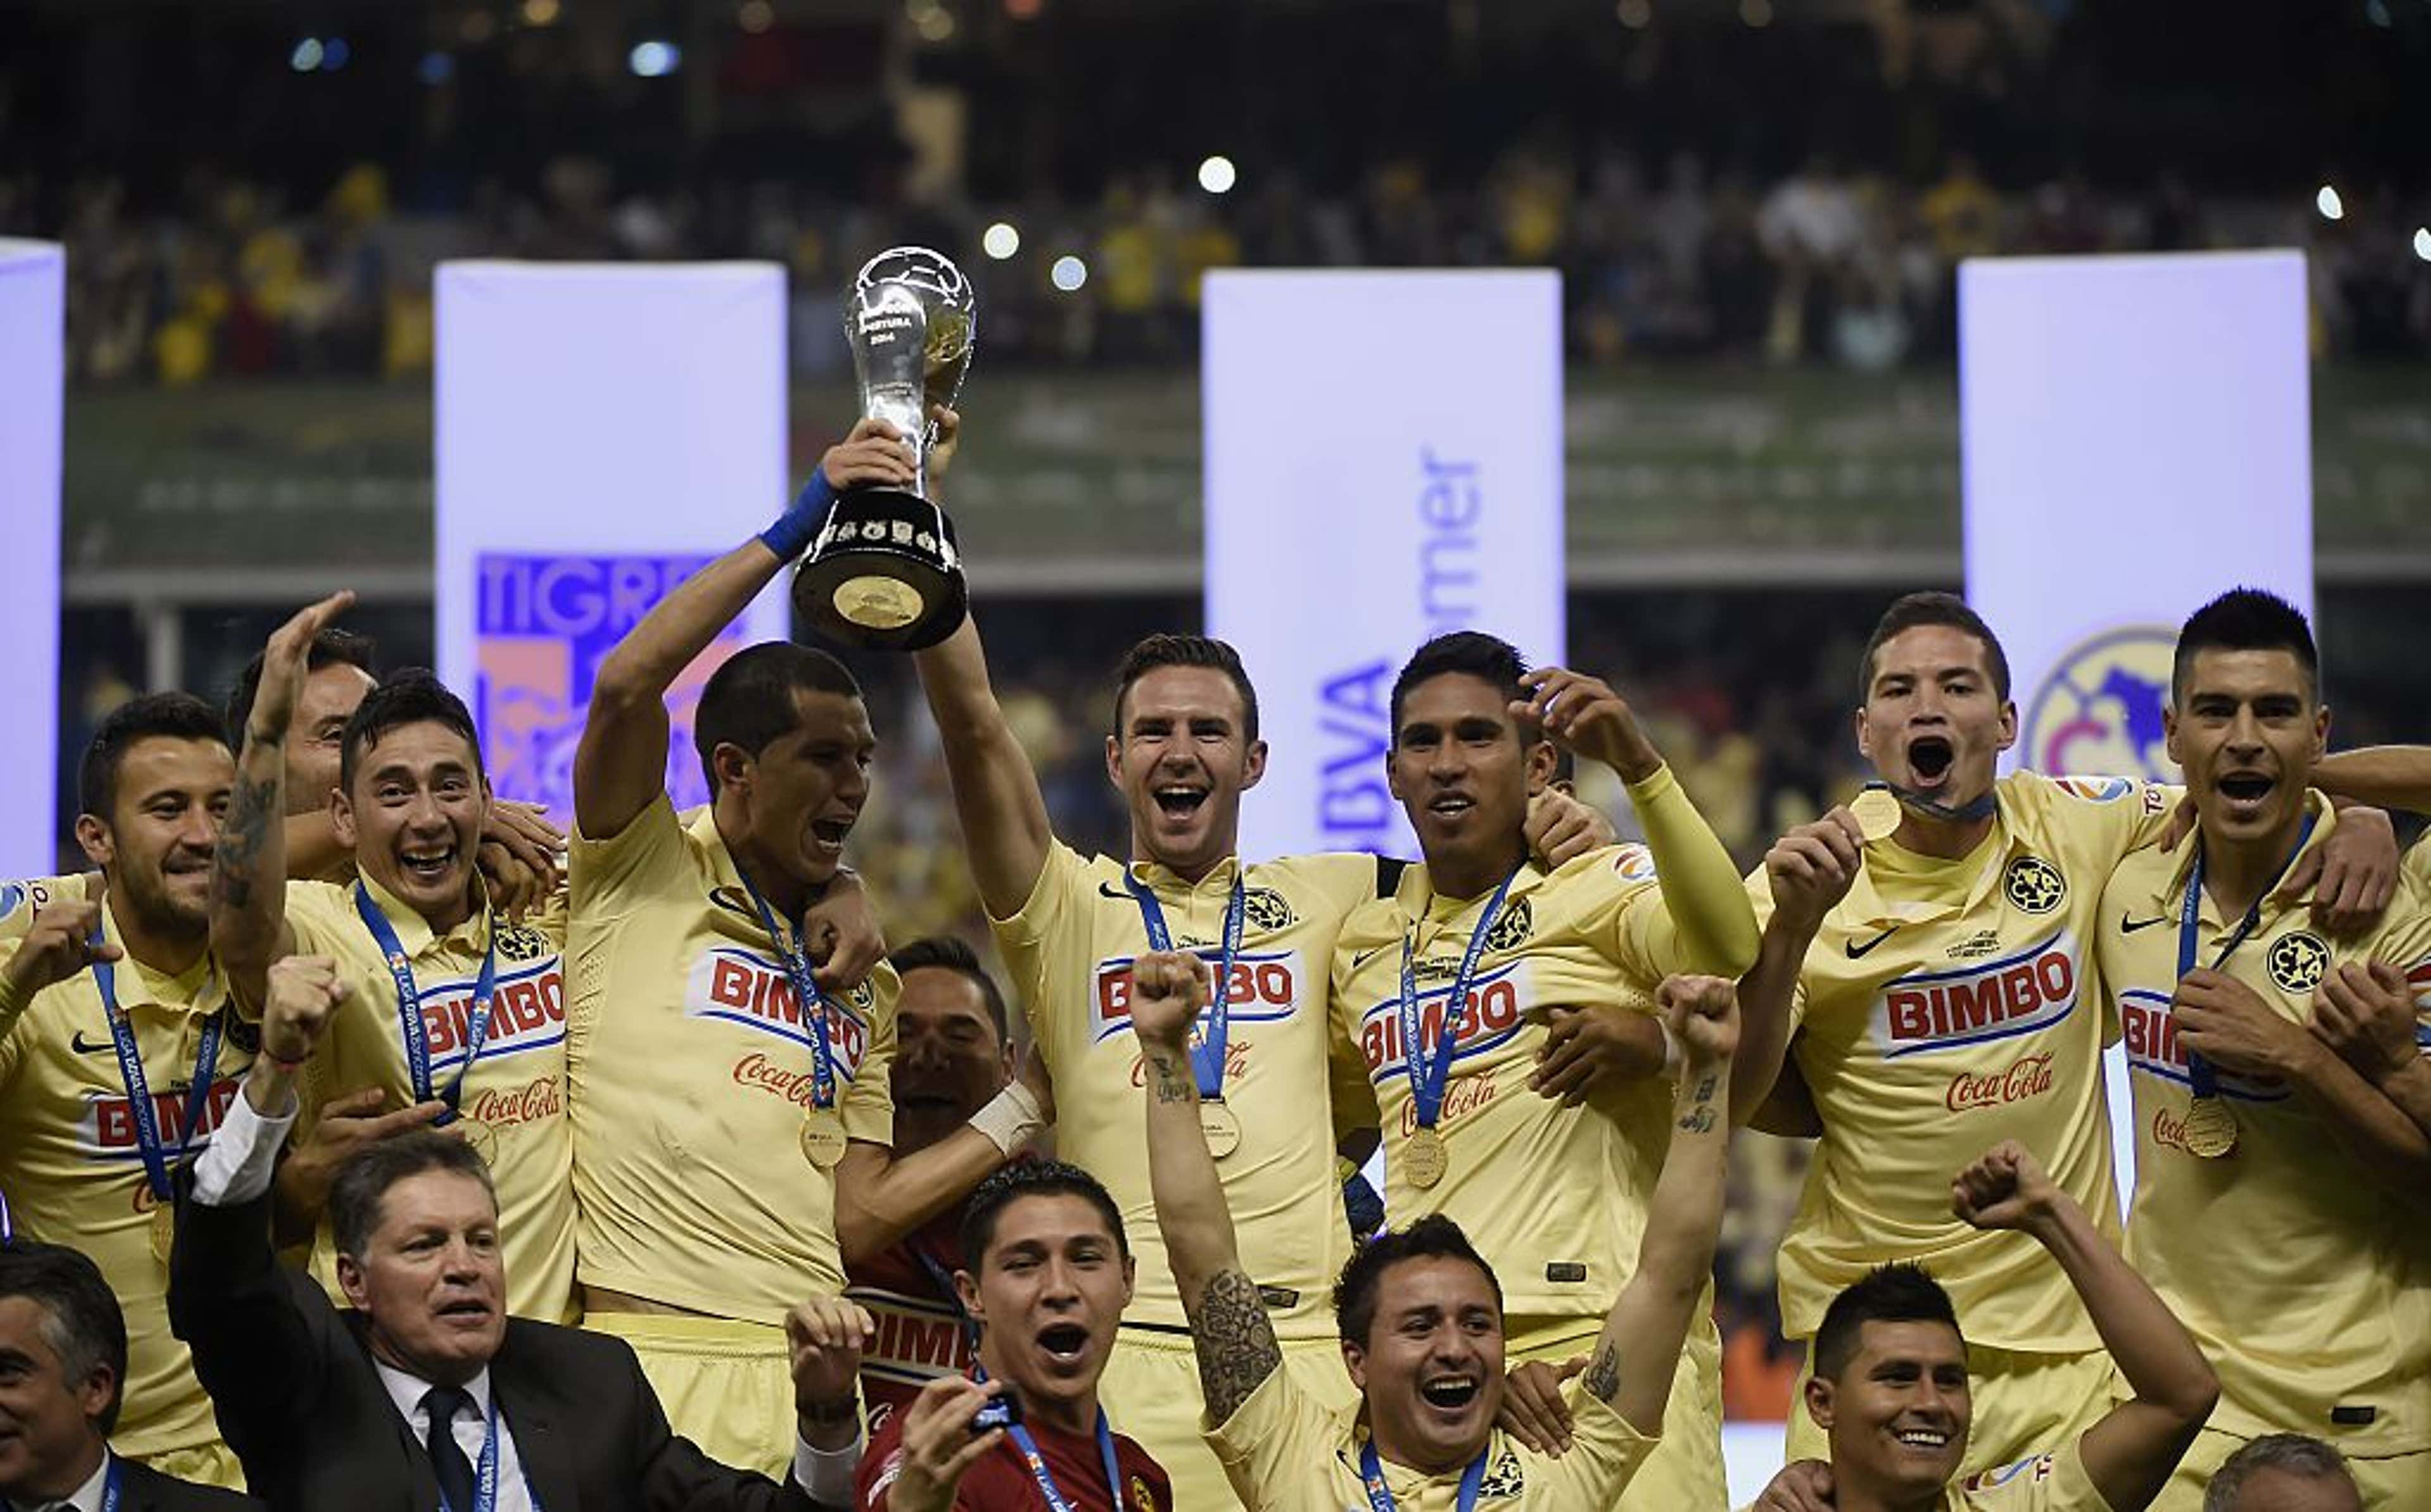 📈 El Top Ten de clubes mexicanos, ¿alguno quedará campeón